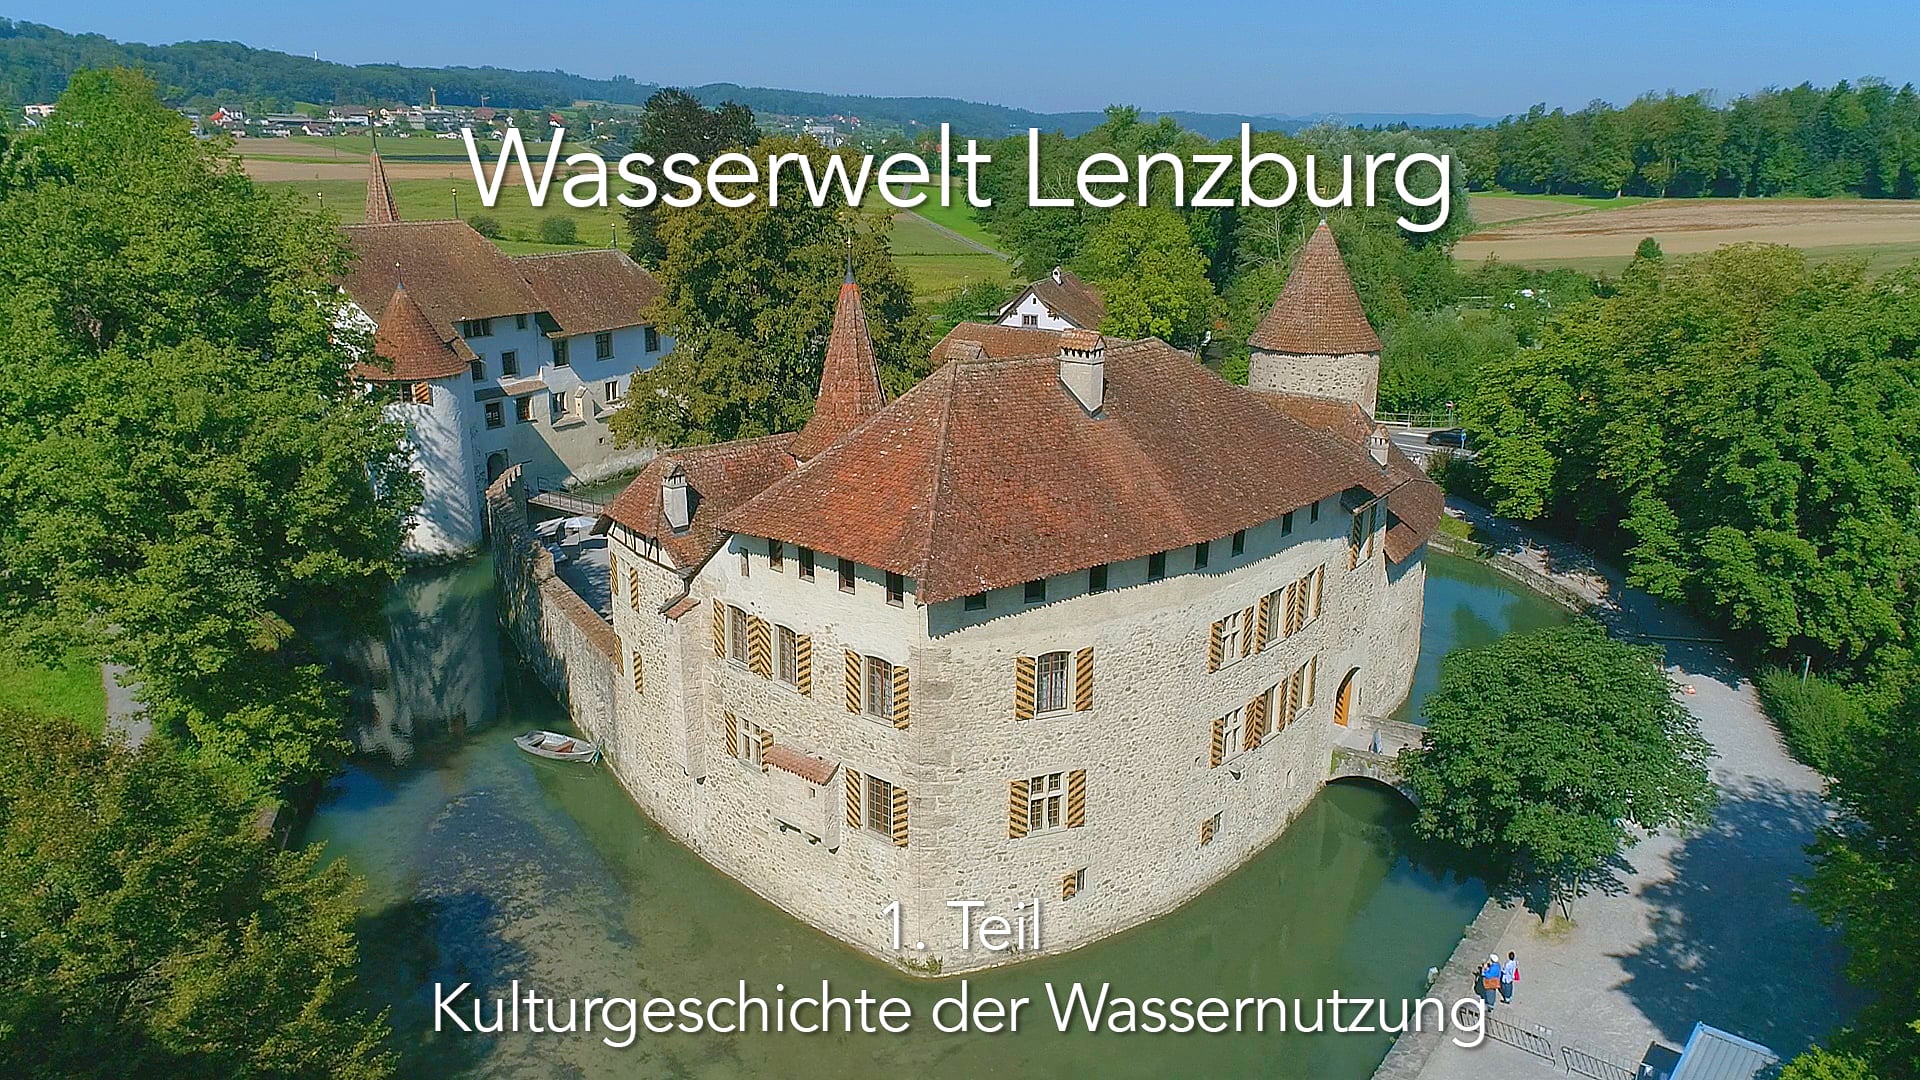 Wasserwelt Lenzburg | 1. Teil: "Kulturgeschichte der Wassernutzng"